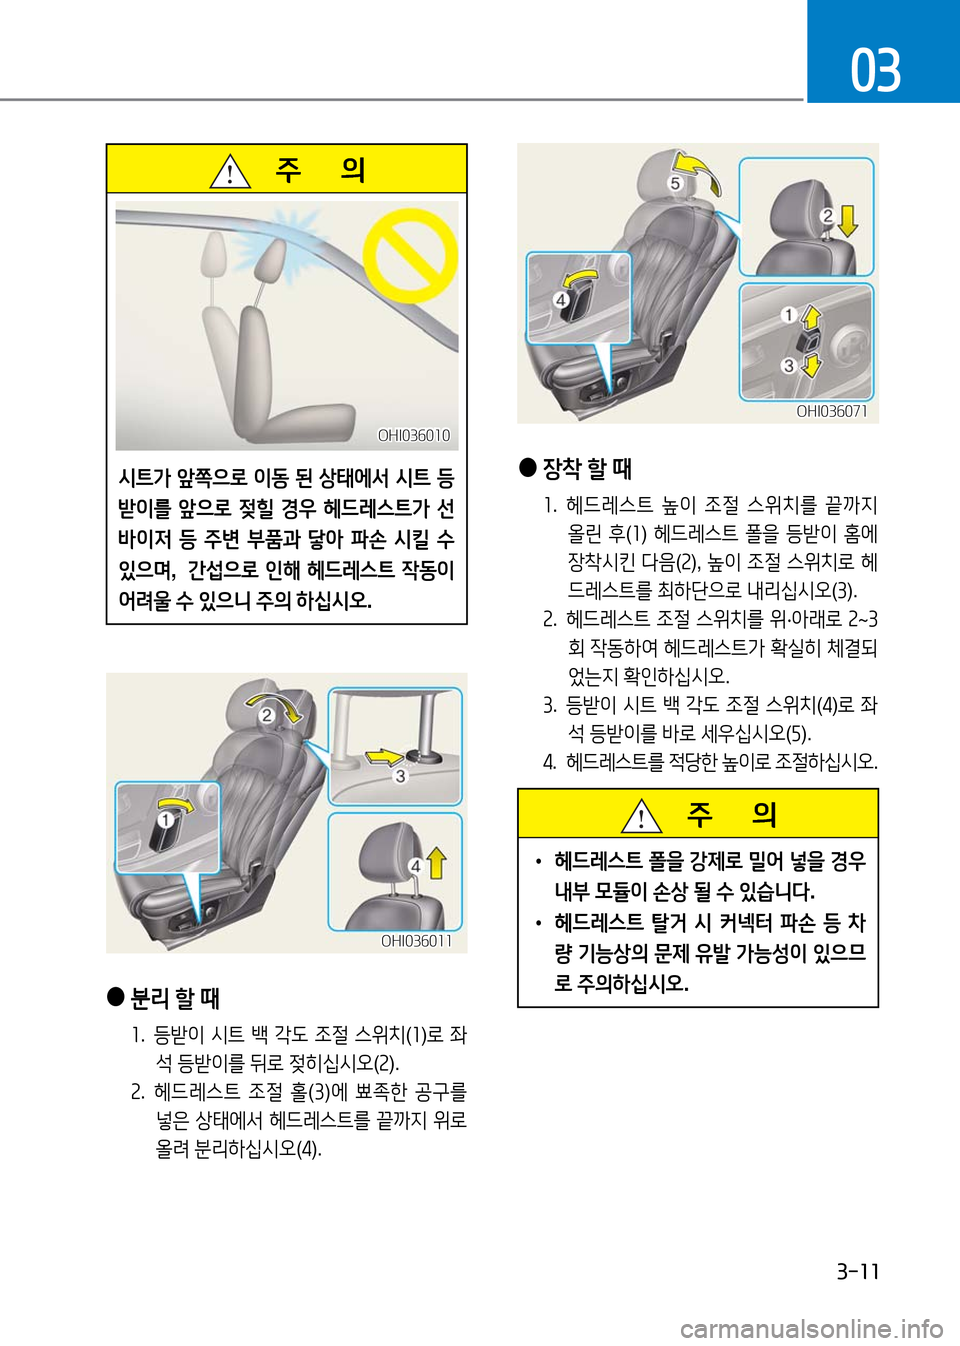 Hyundai Genesis 2016  EQ900 HI - 사용 설명서 (in Korean) 3-11
03
   주       의
시트가 앞쪽으로 이동 된 상태에서 시트 등
받이를 앞으로 젖힐 경우 헤드레스트가 선
바이저 등 주변 부품과 닿아 파손 시킬 수 
있